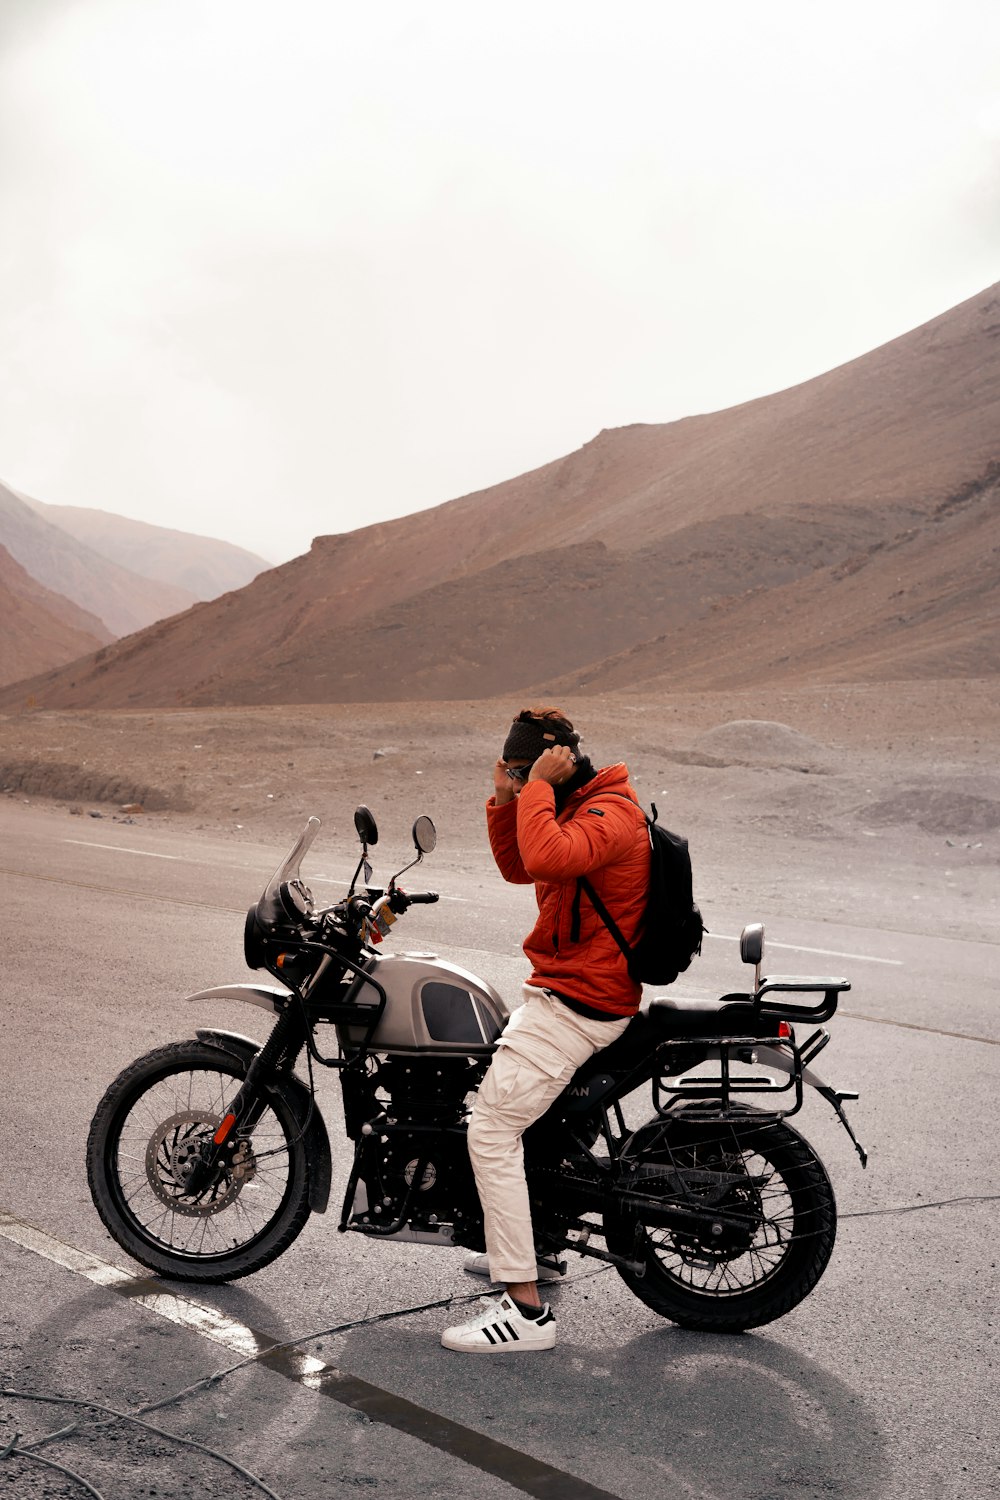 Un uomo in piedi accanto a una motocicletta